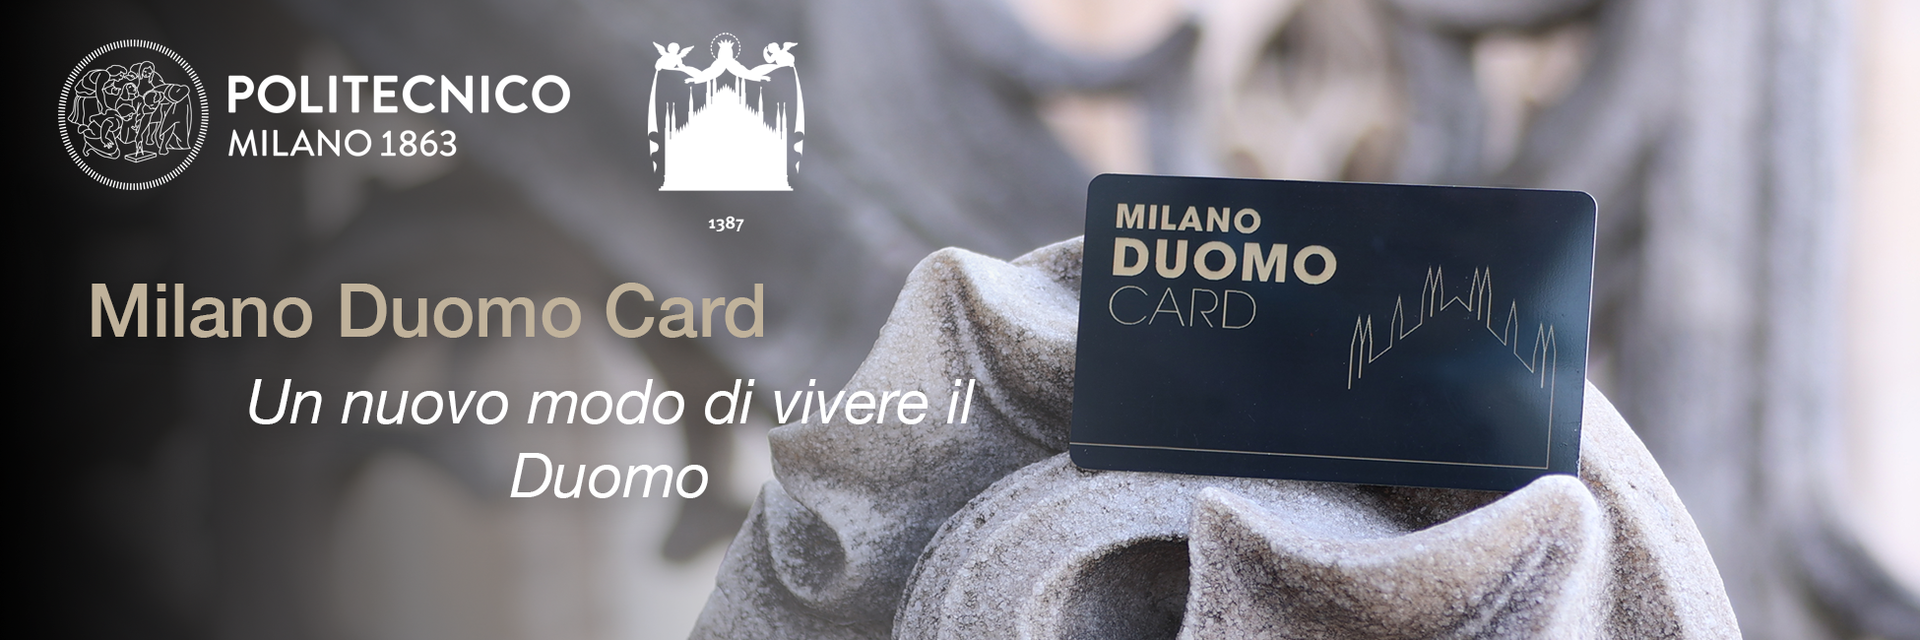 Milano Duomo Card: un nuovo modo di vivere il Duomo